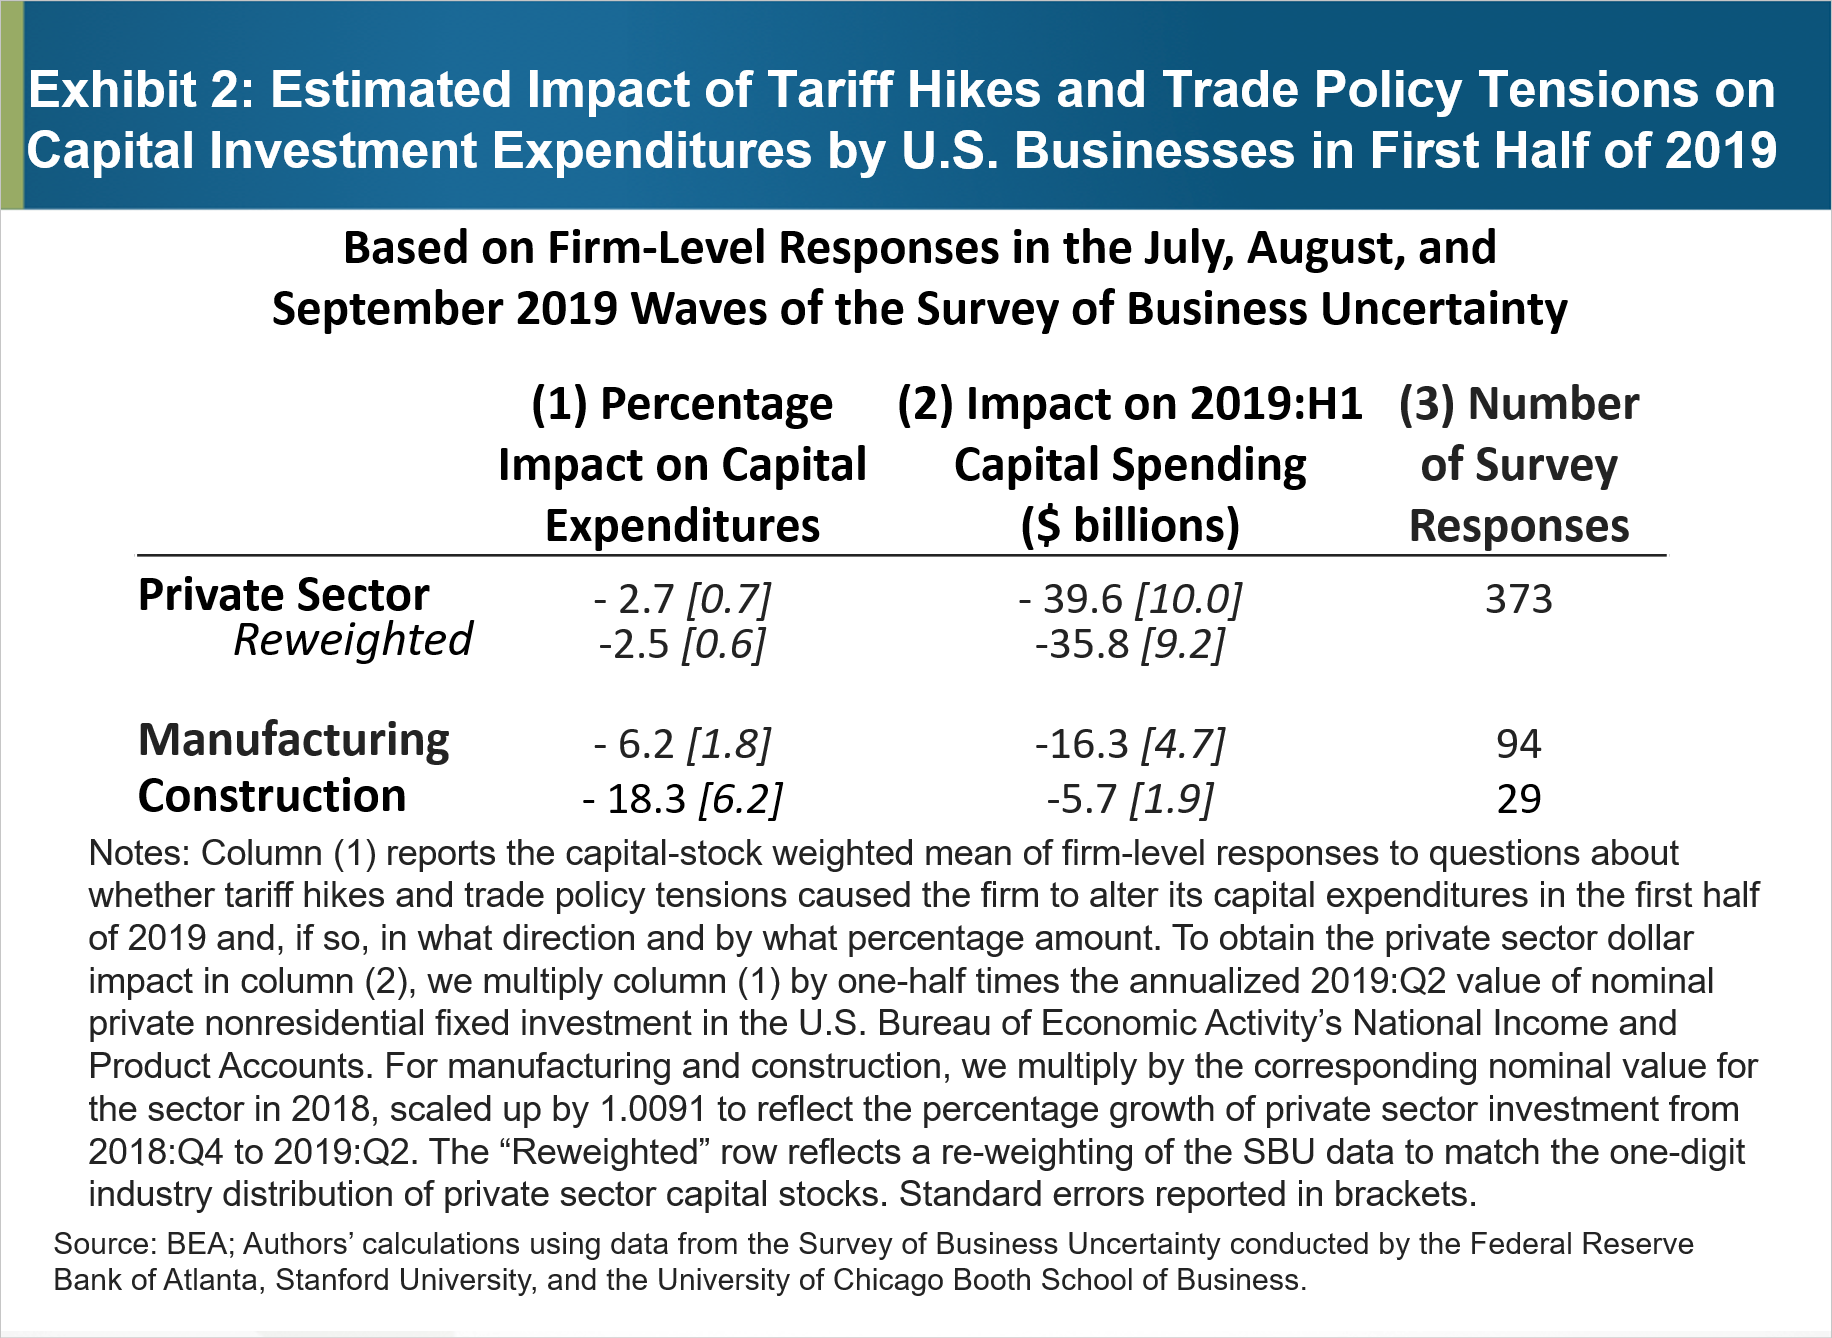 Figura 2: Impatto stimato degli aumenti tariffari e delle tensioni sulla politica commerciale sulla spesa per investimenti di capitale da parte delle imprese statunitensi nella prima metà del 2019